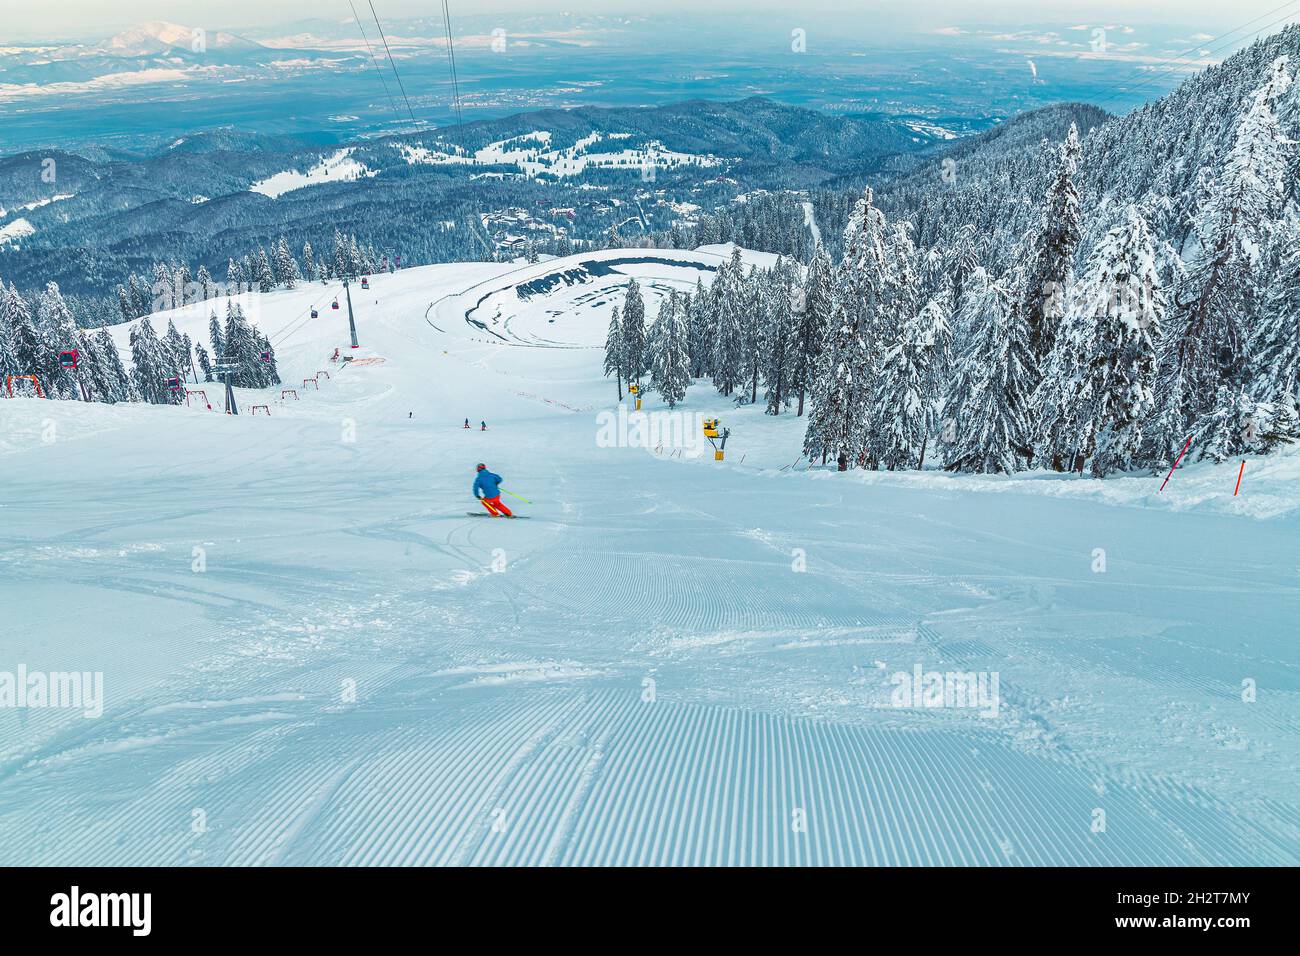 Skieur sur la spectaculaire piste de ski.Téléphérique et vue sur le lac gelé depuis la piste de ski, Poiana Brasov, Carpates, Roumanie, Europe Banque D'Images